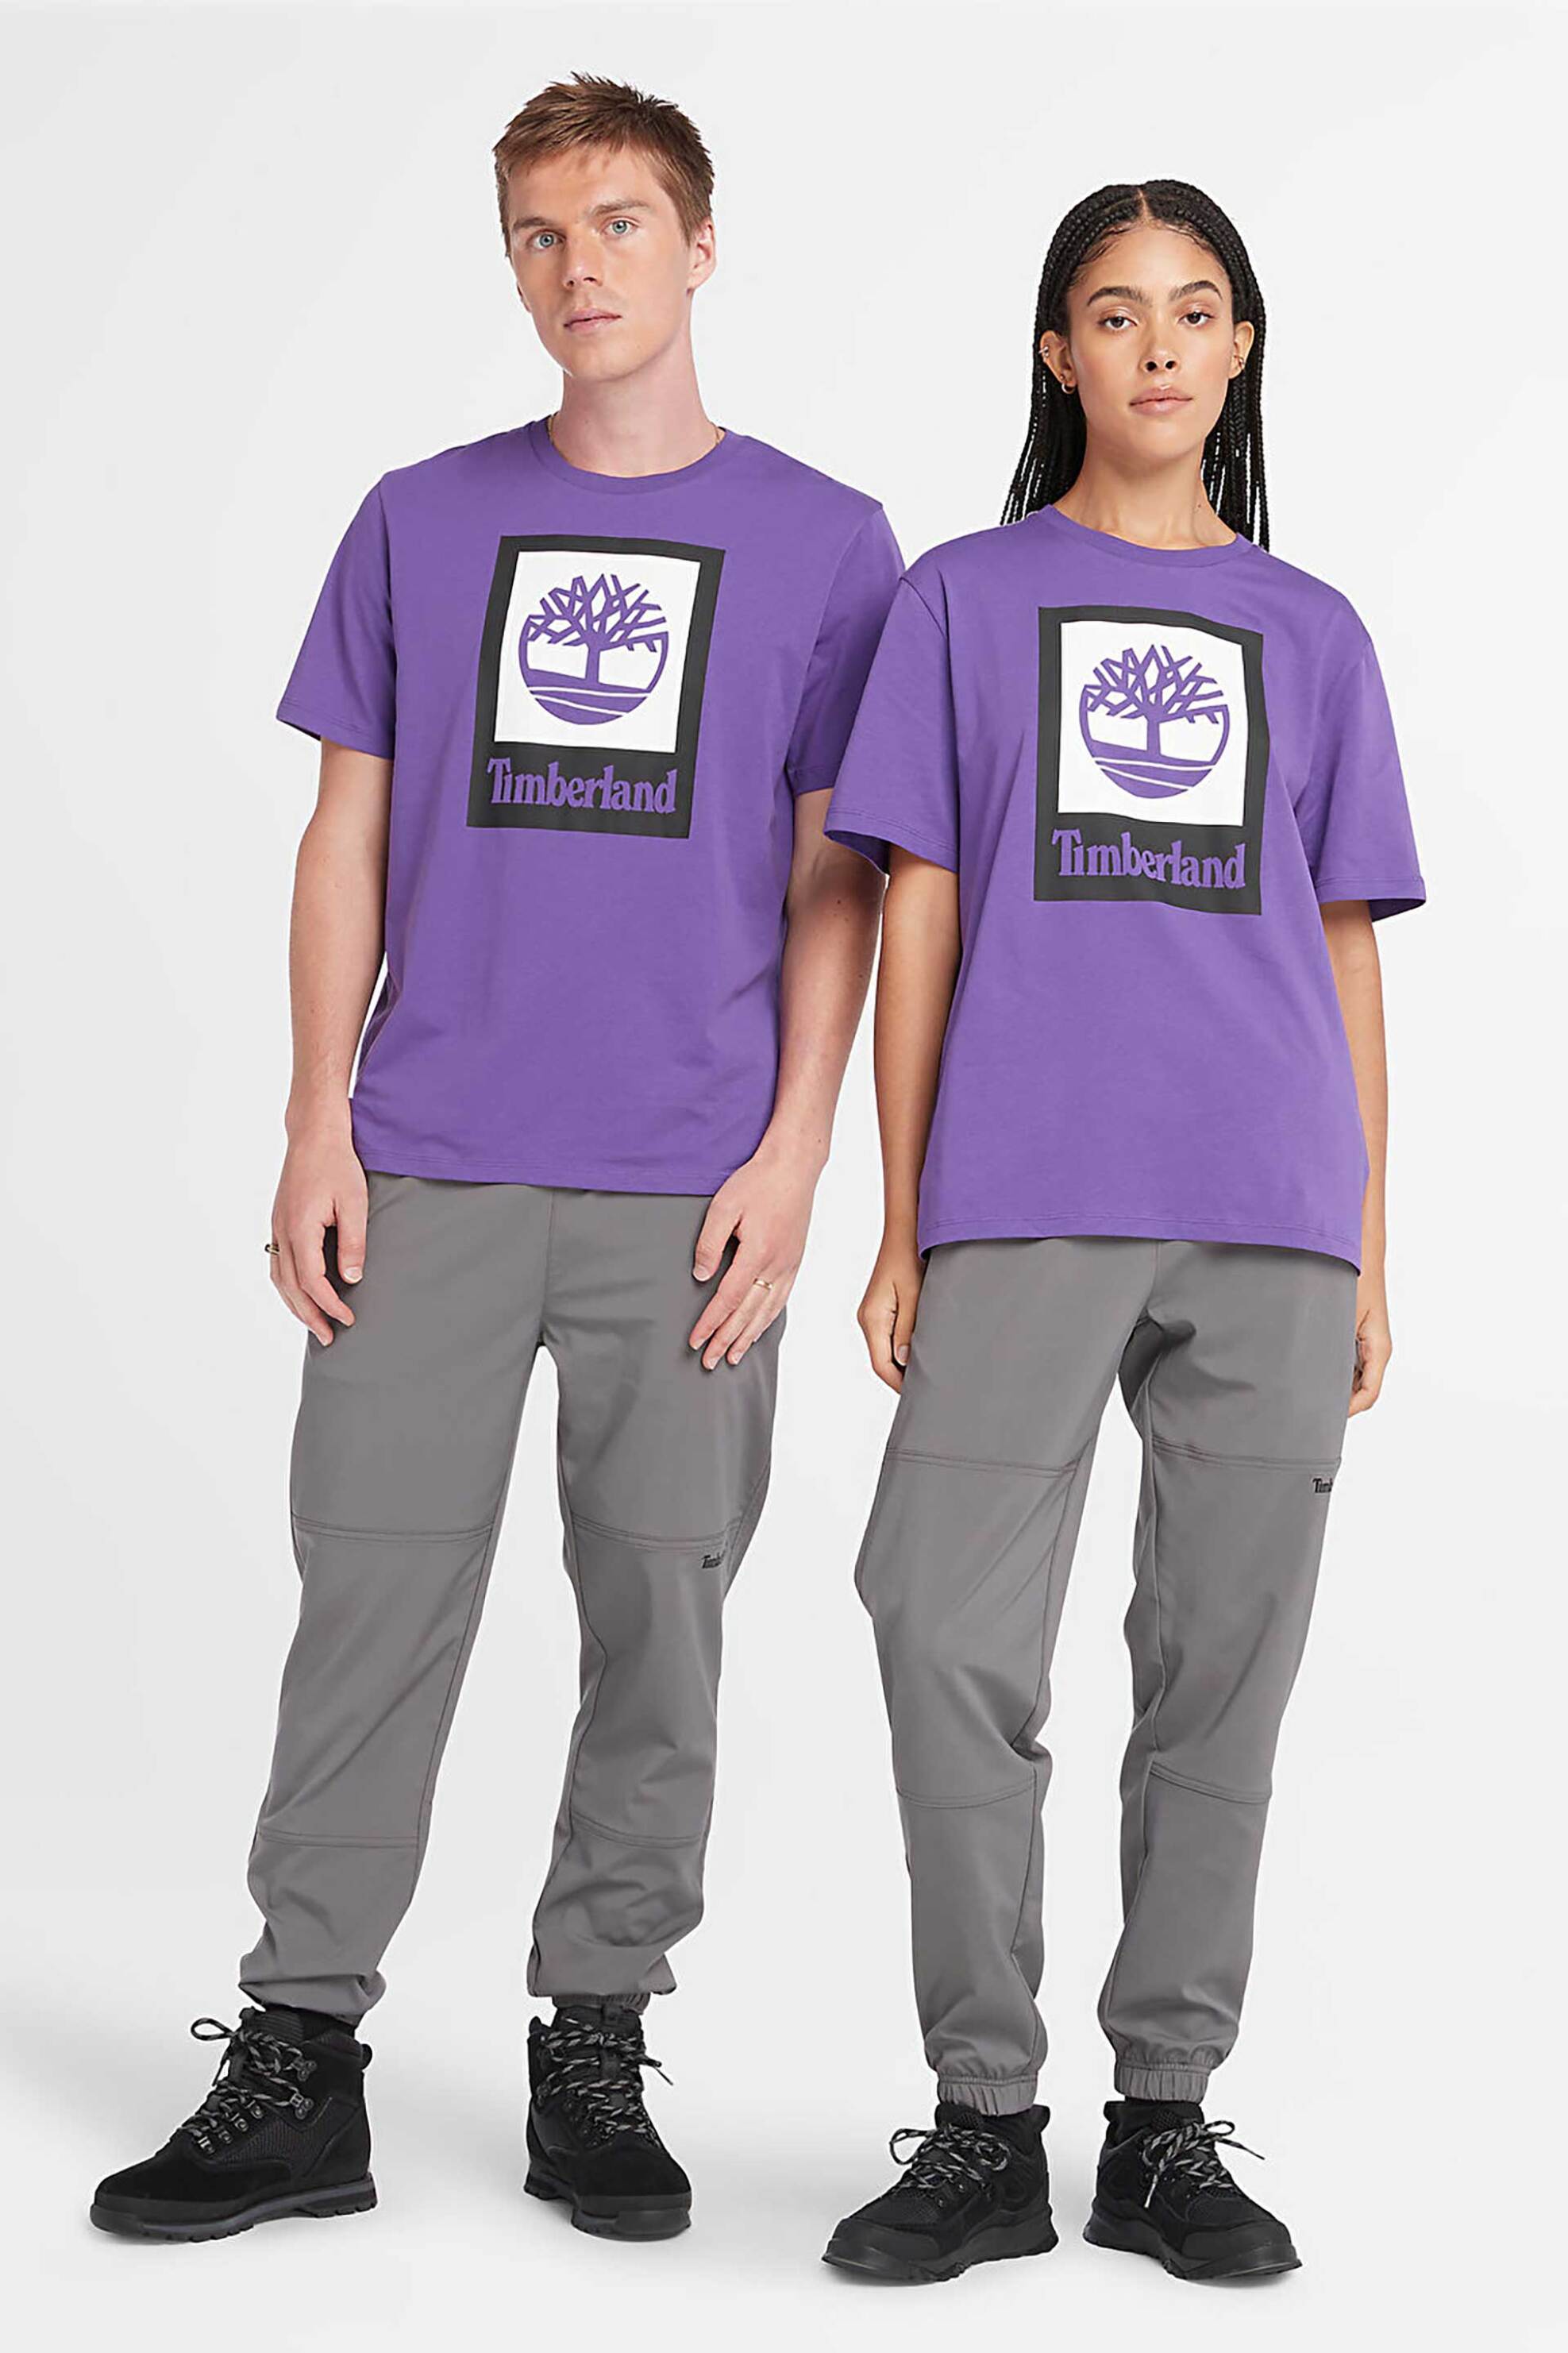 Ανδρική Μόδα > Ανδρικά Ρούχα > Ανδρικές Μπλούζες > Ανδρικά T-Shirts Timberland unisex T-shirt Authentic Fit "Vertical Stacked Logo" - TB0A5QS2EJ91 Μοβ